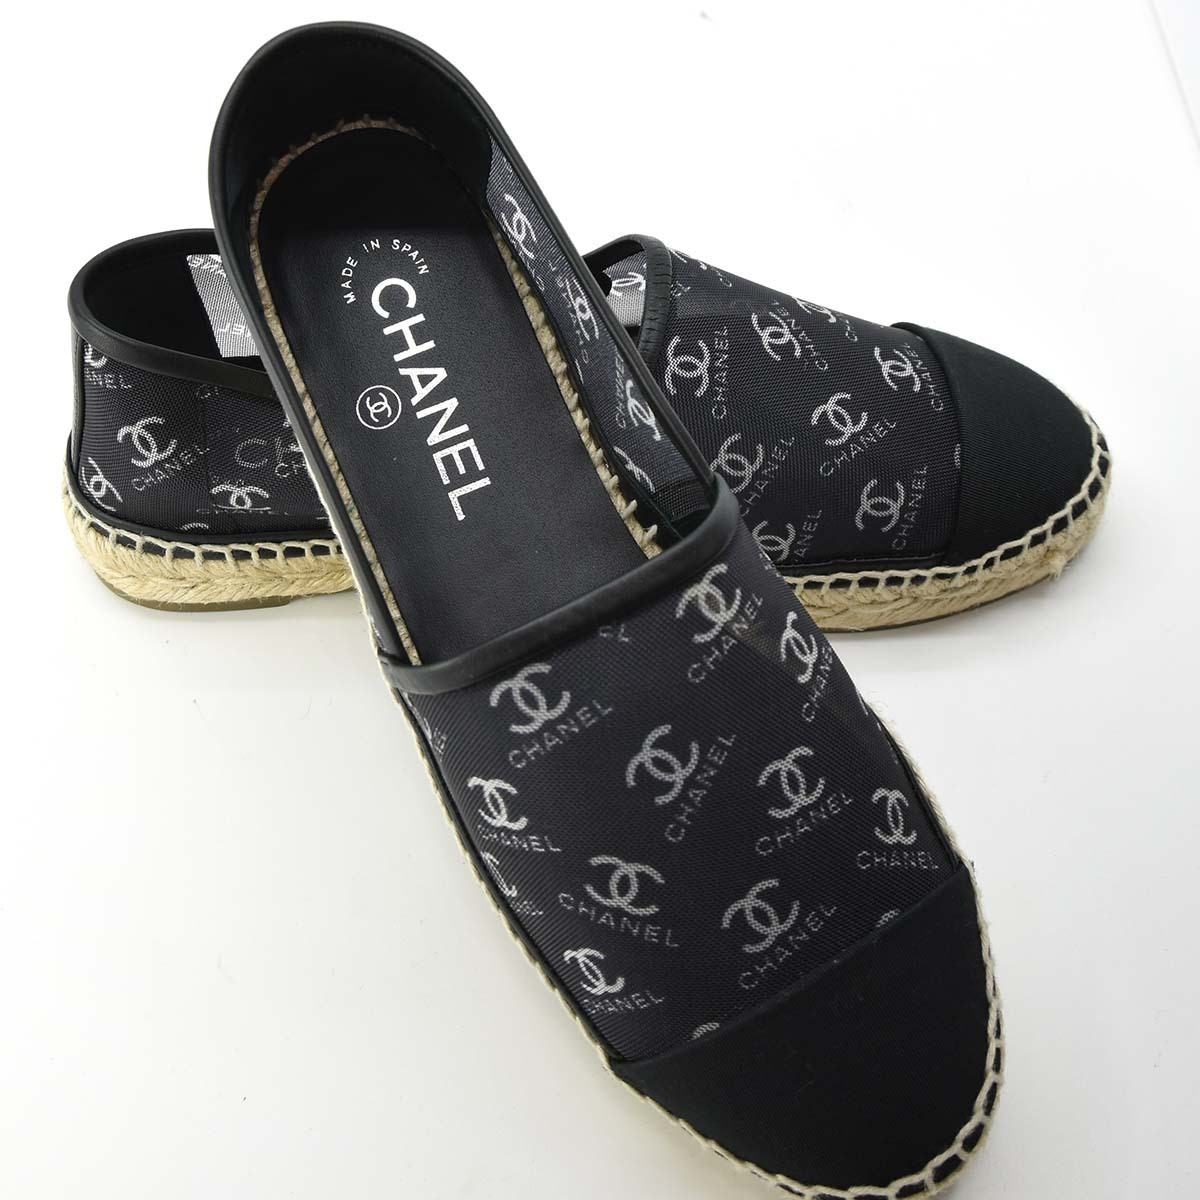  ломбард прекрасный товар Chanel эспадрильи здесь Mark плоская обувь сетка общий рисунок черный 38 CHANEL обувь сандалии G34673 прекрасный товар ... ломбард 